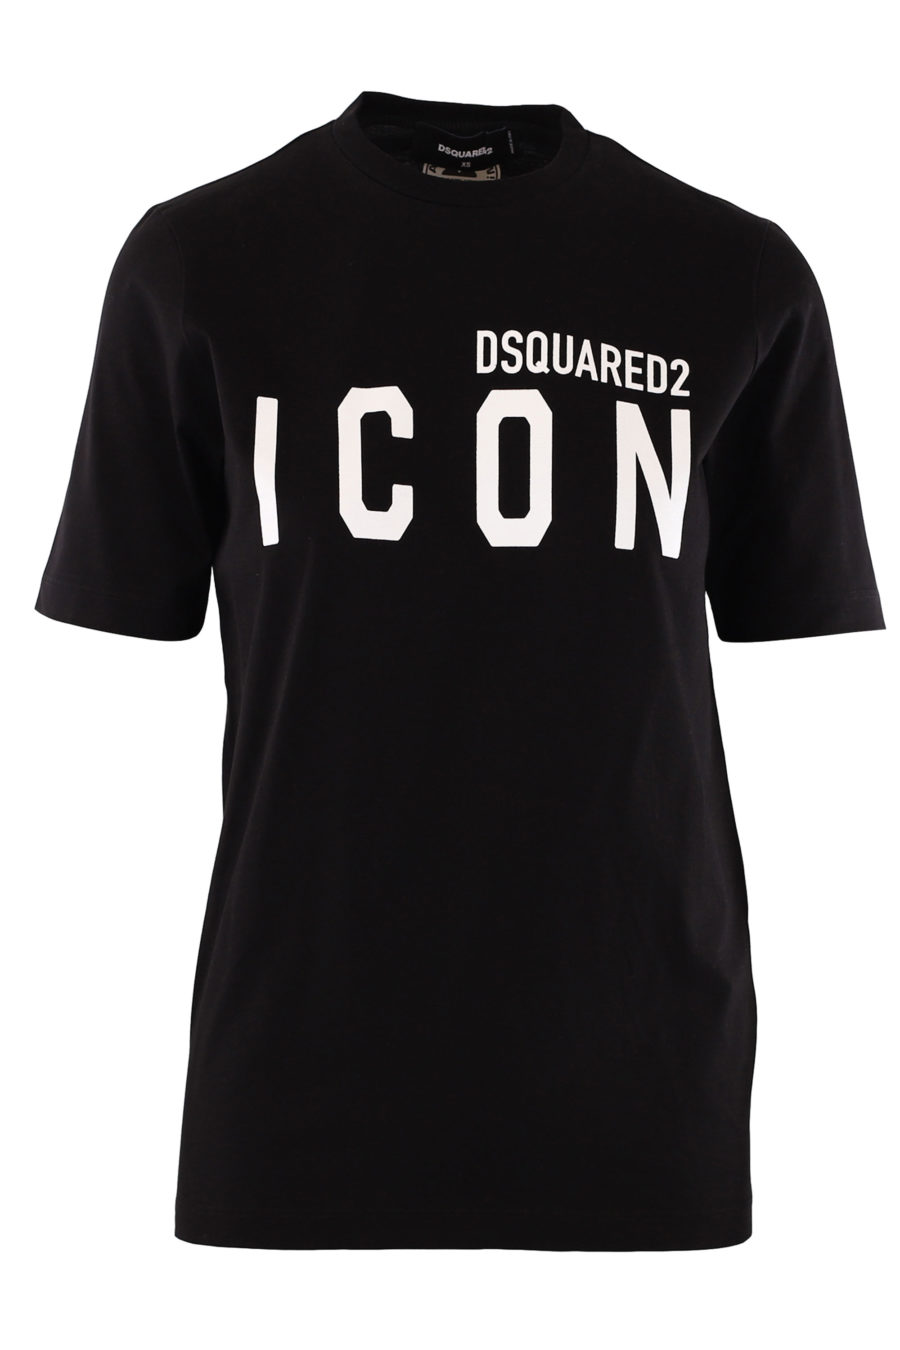 Camiseta negra con logo blanco "Icon" - IMG 9876